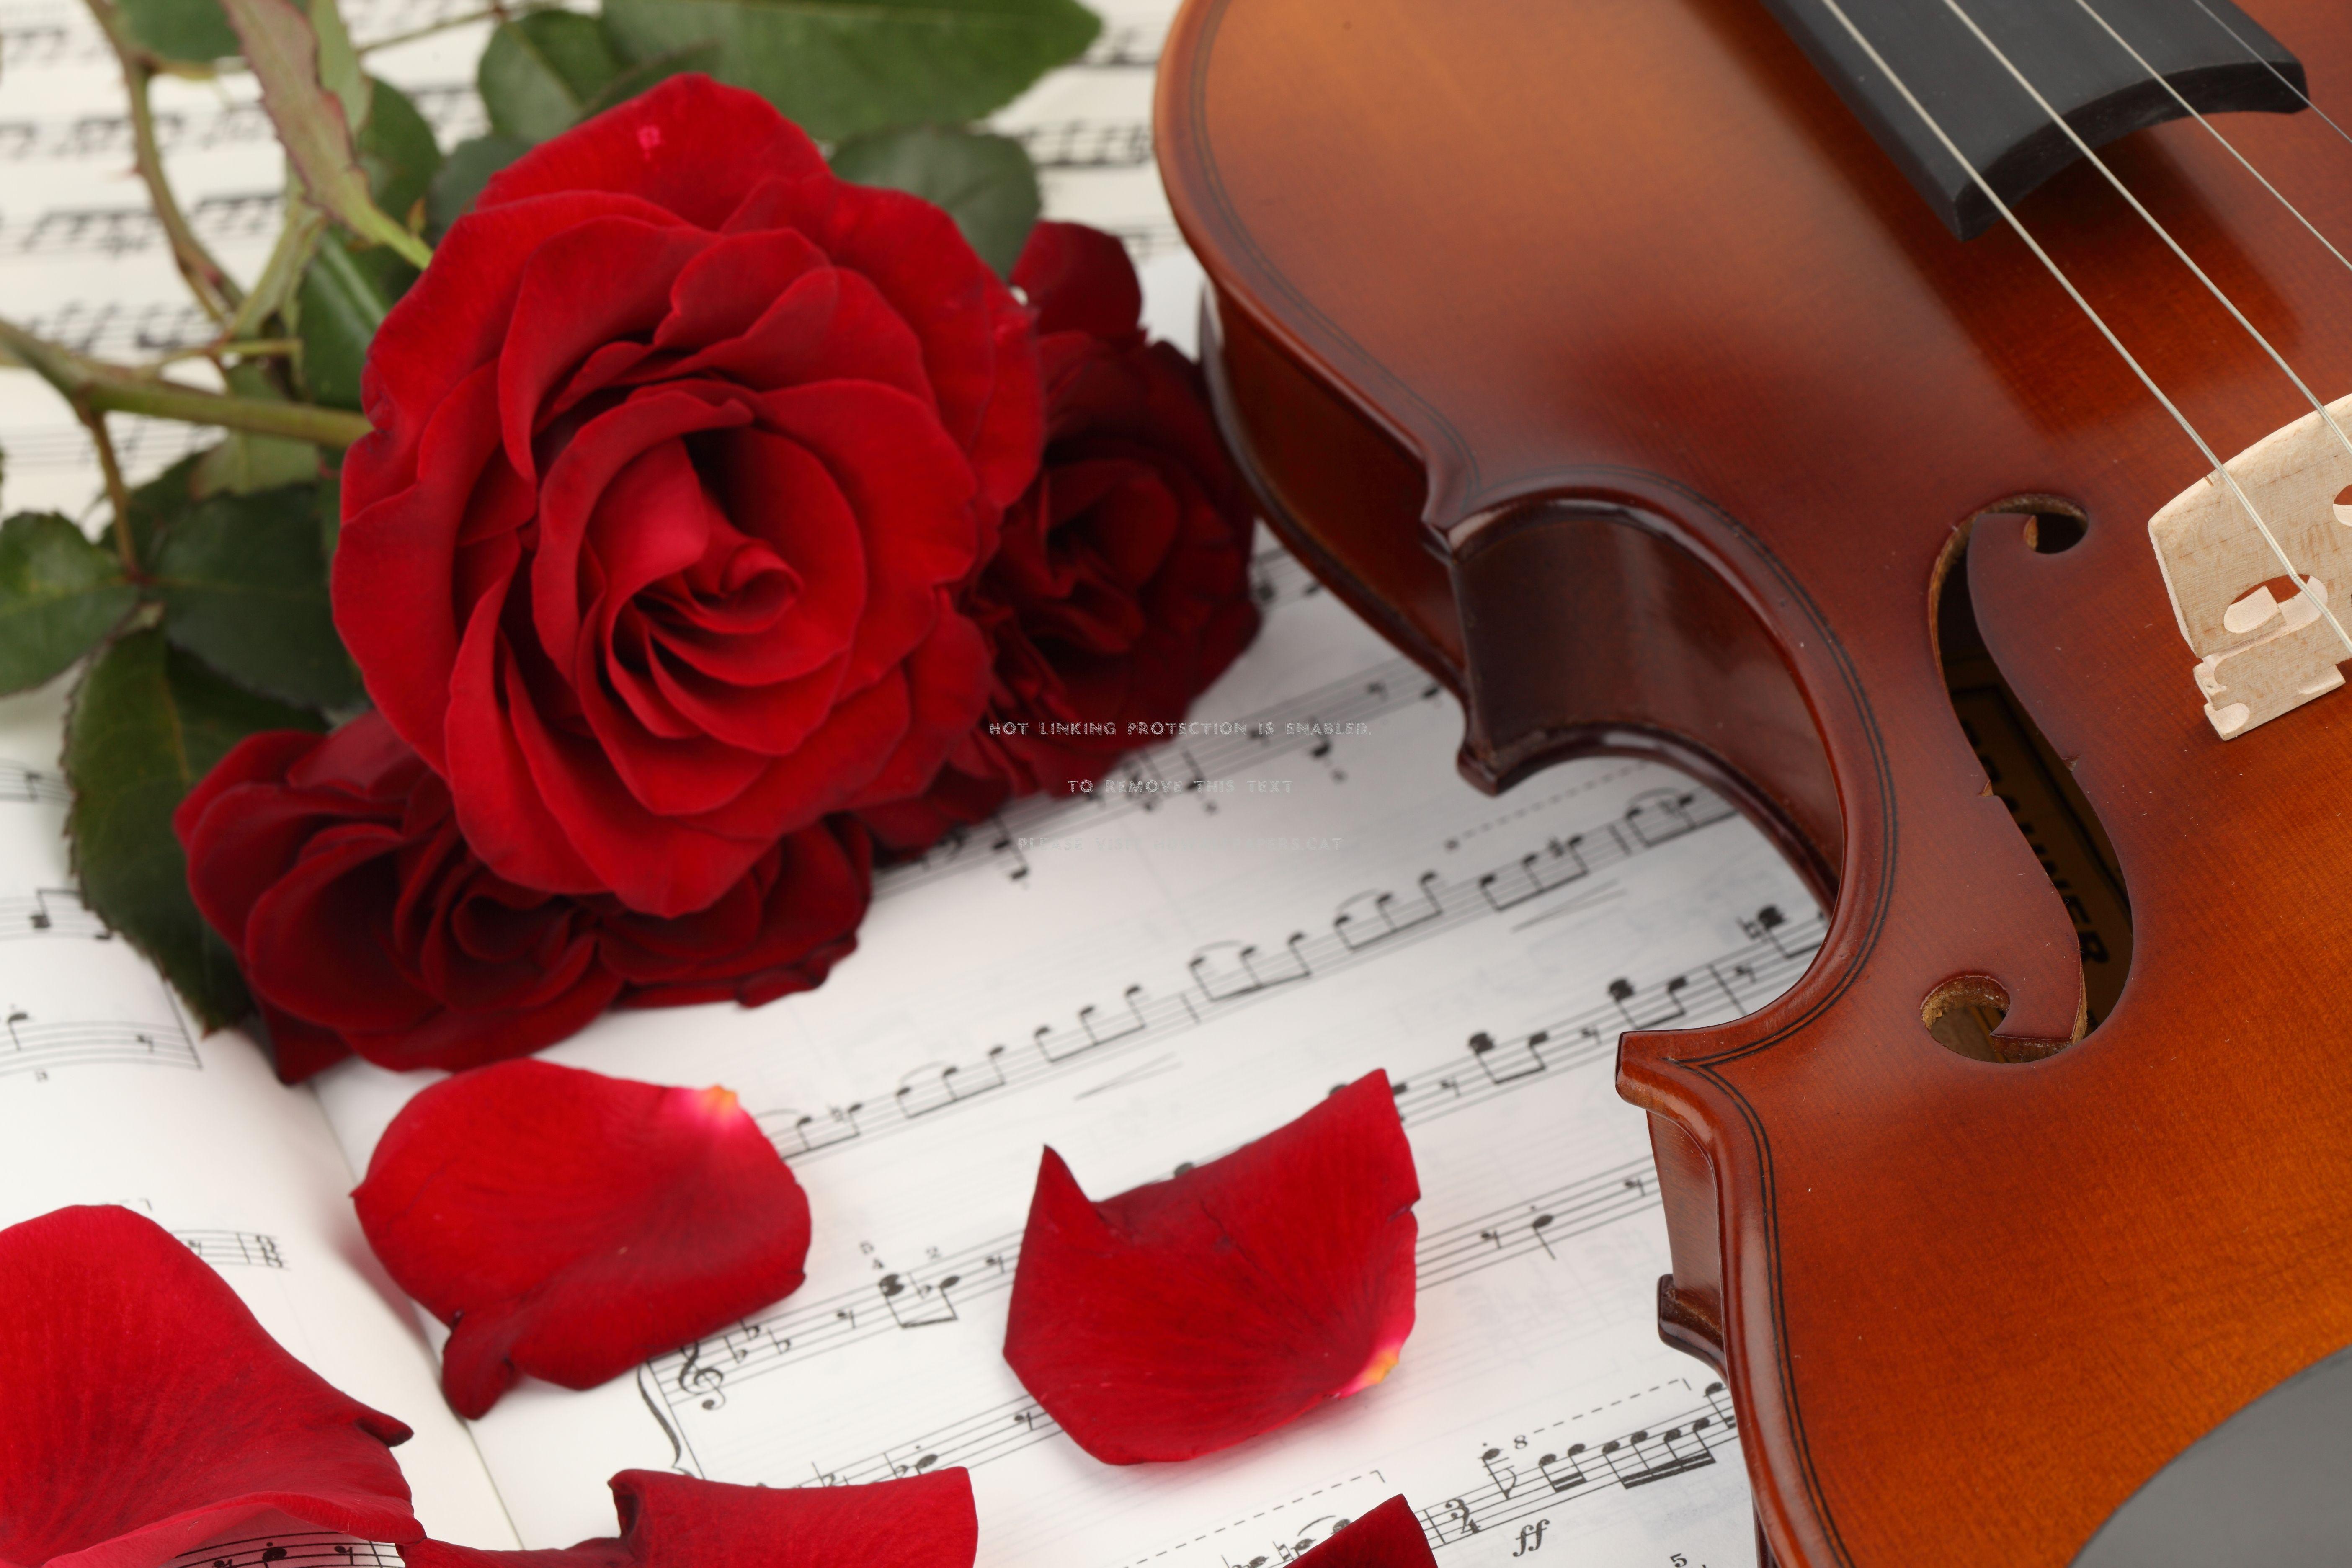 Музыка romance. Музыкальные инструменты и цветы. Скрипка. Розы и музыкальные инструменты. Рояль с цветами.